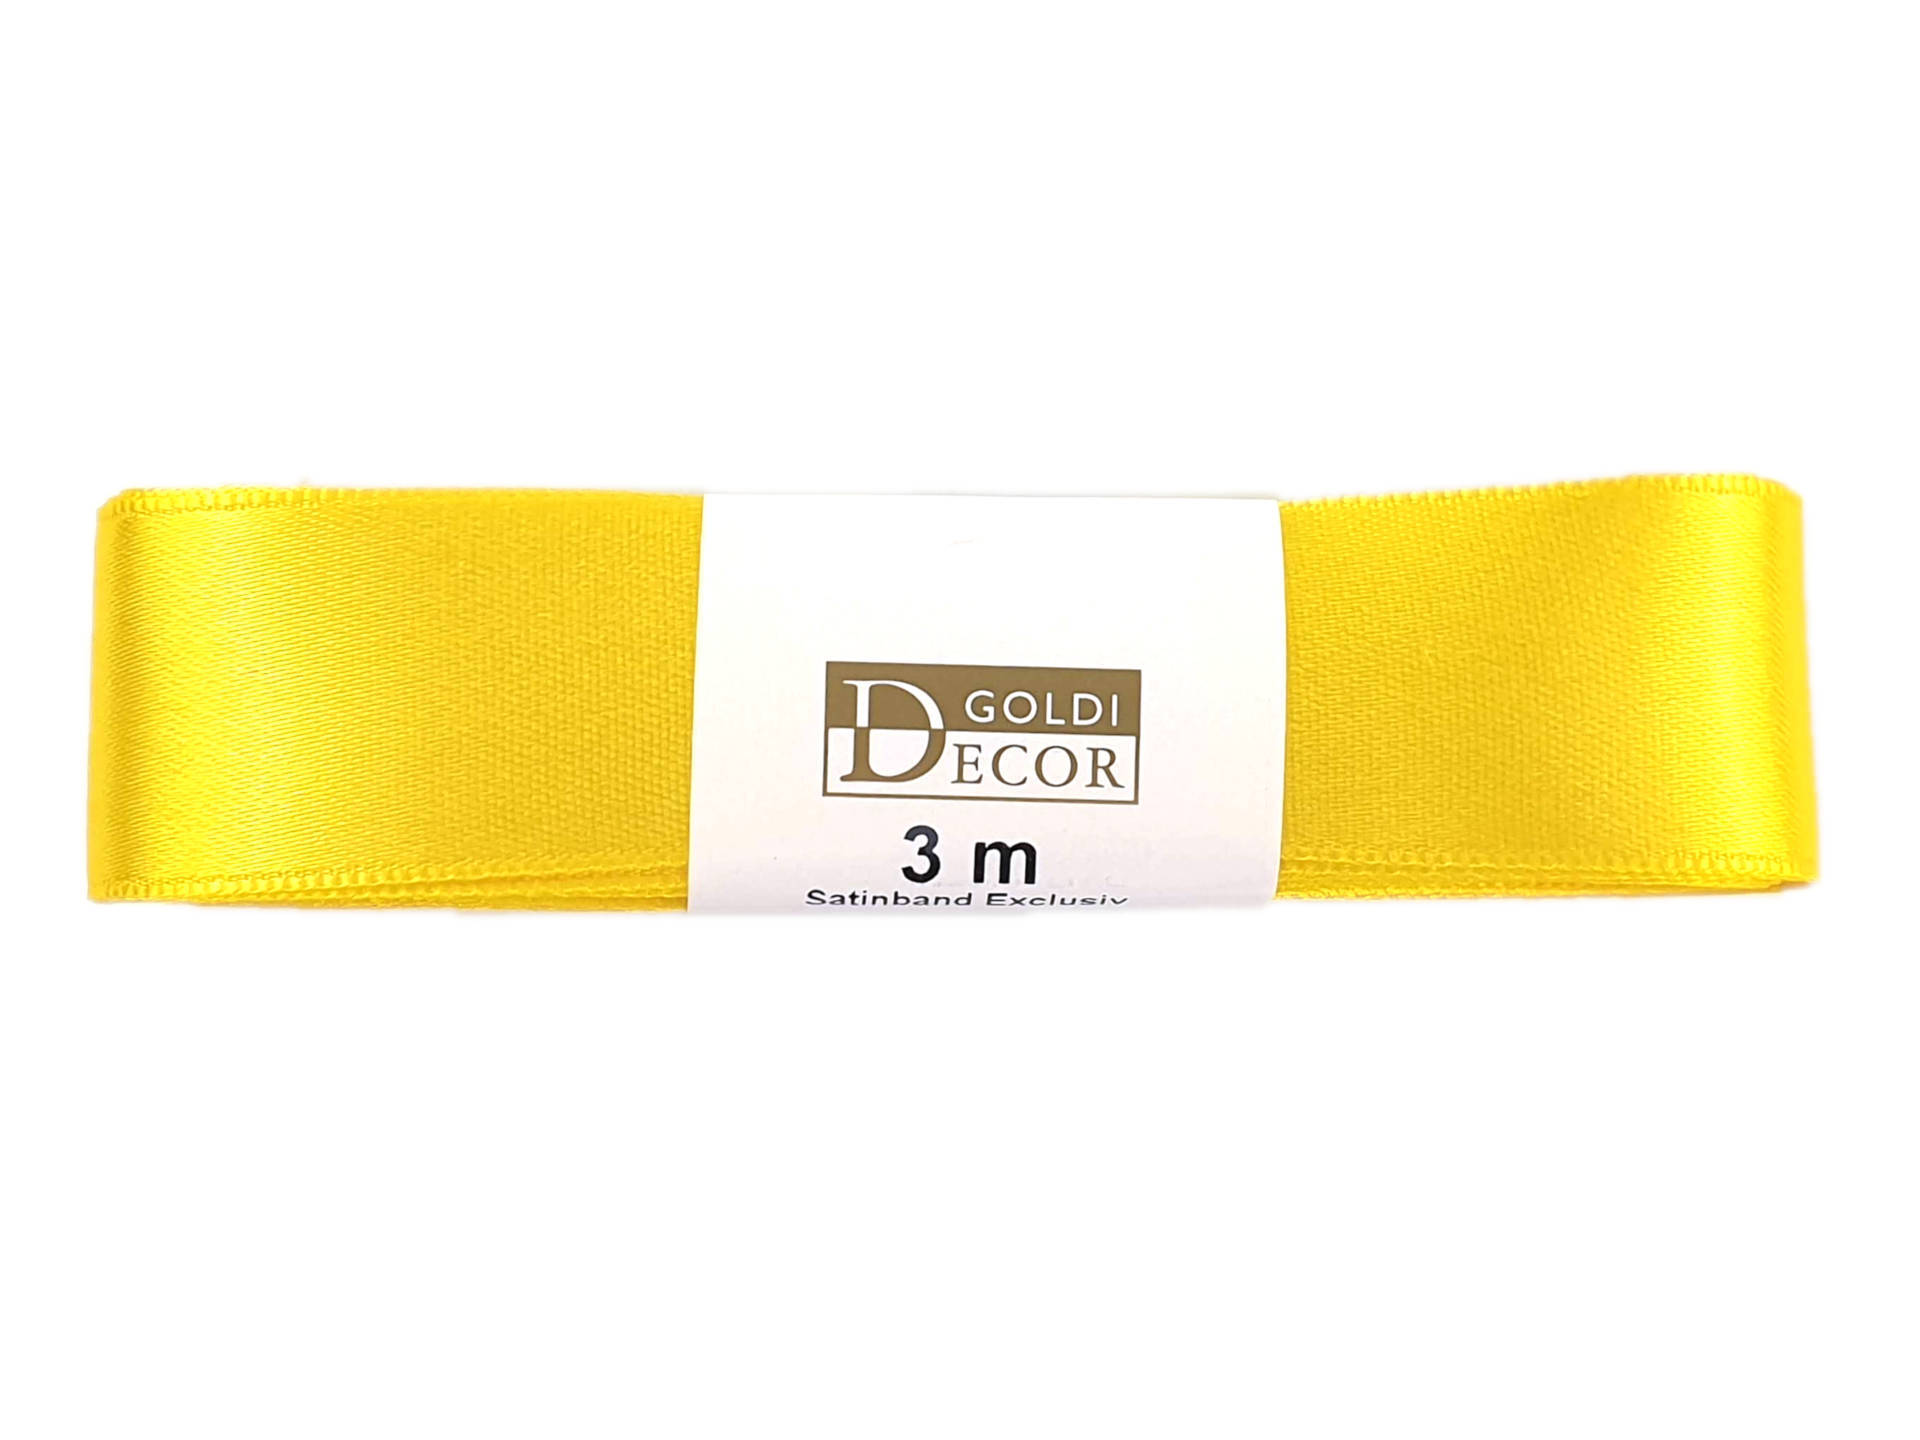 Premium-Satinband, gelb, 25 mm breit, 3 m Strängchen - satinband-dauersortiment, satinband, premium-qualitaet, geschenkband, dauersortiment